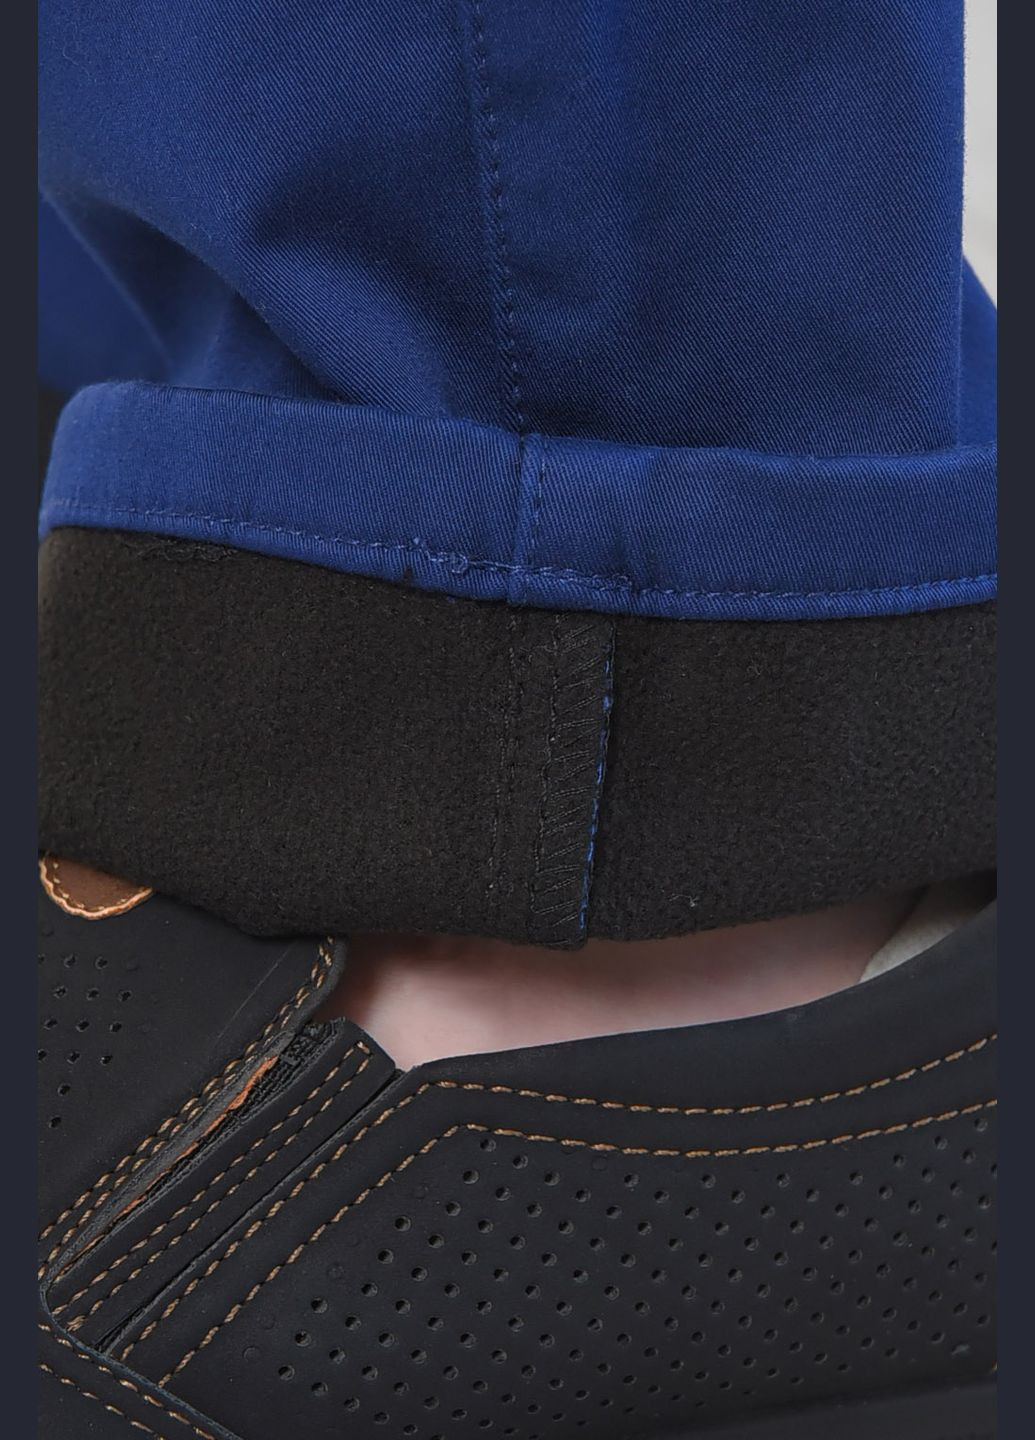 Темно-синие зимние прямые штаны мужские на флисе темно-синего цвета Let's Shop